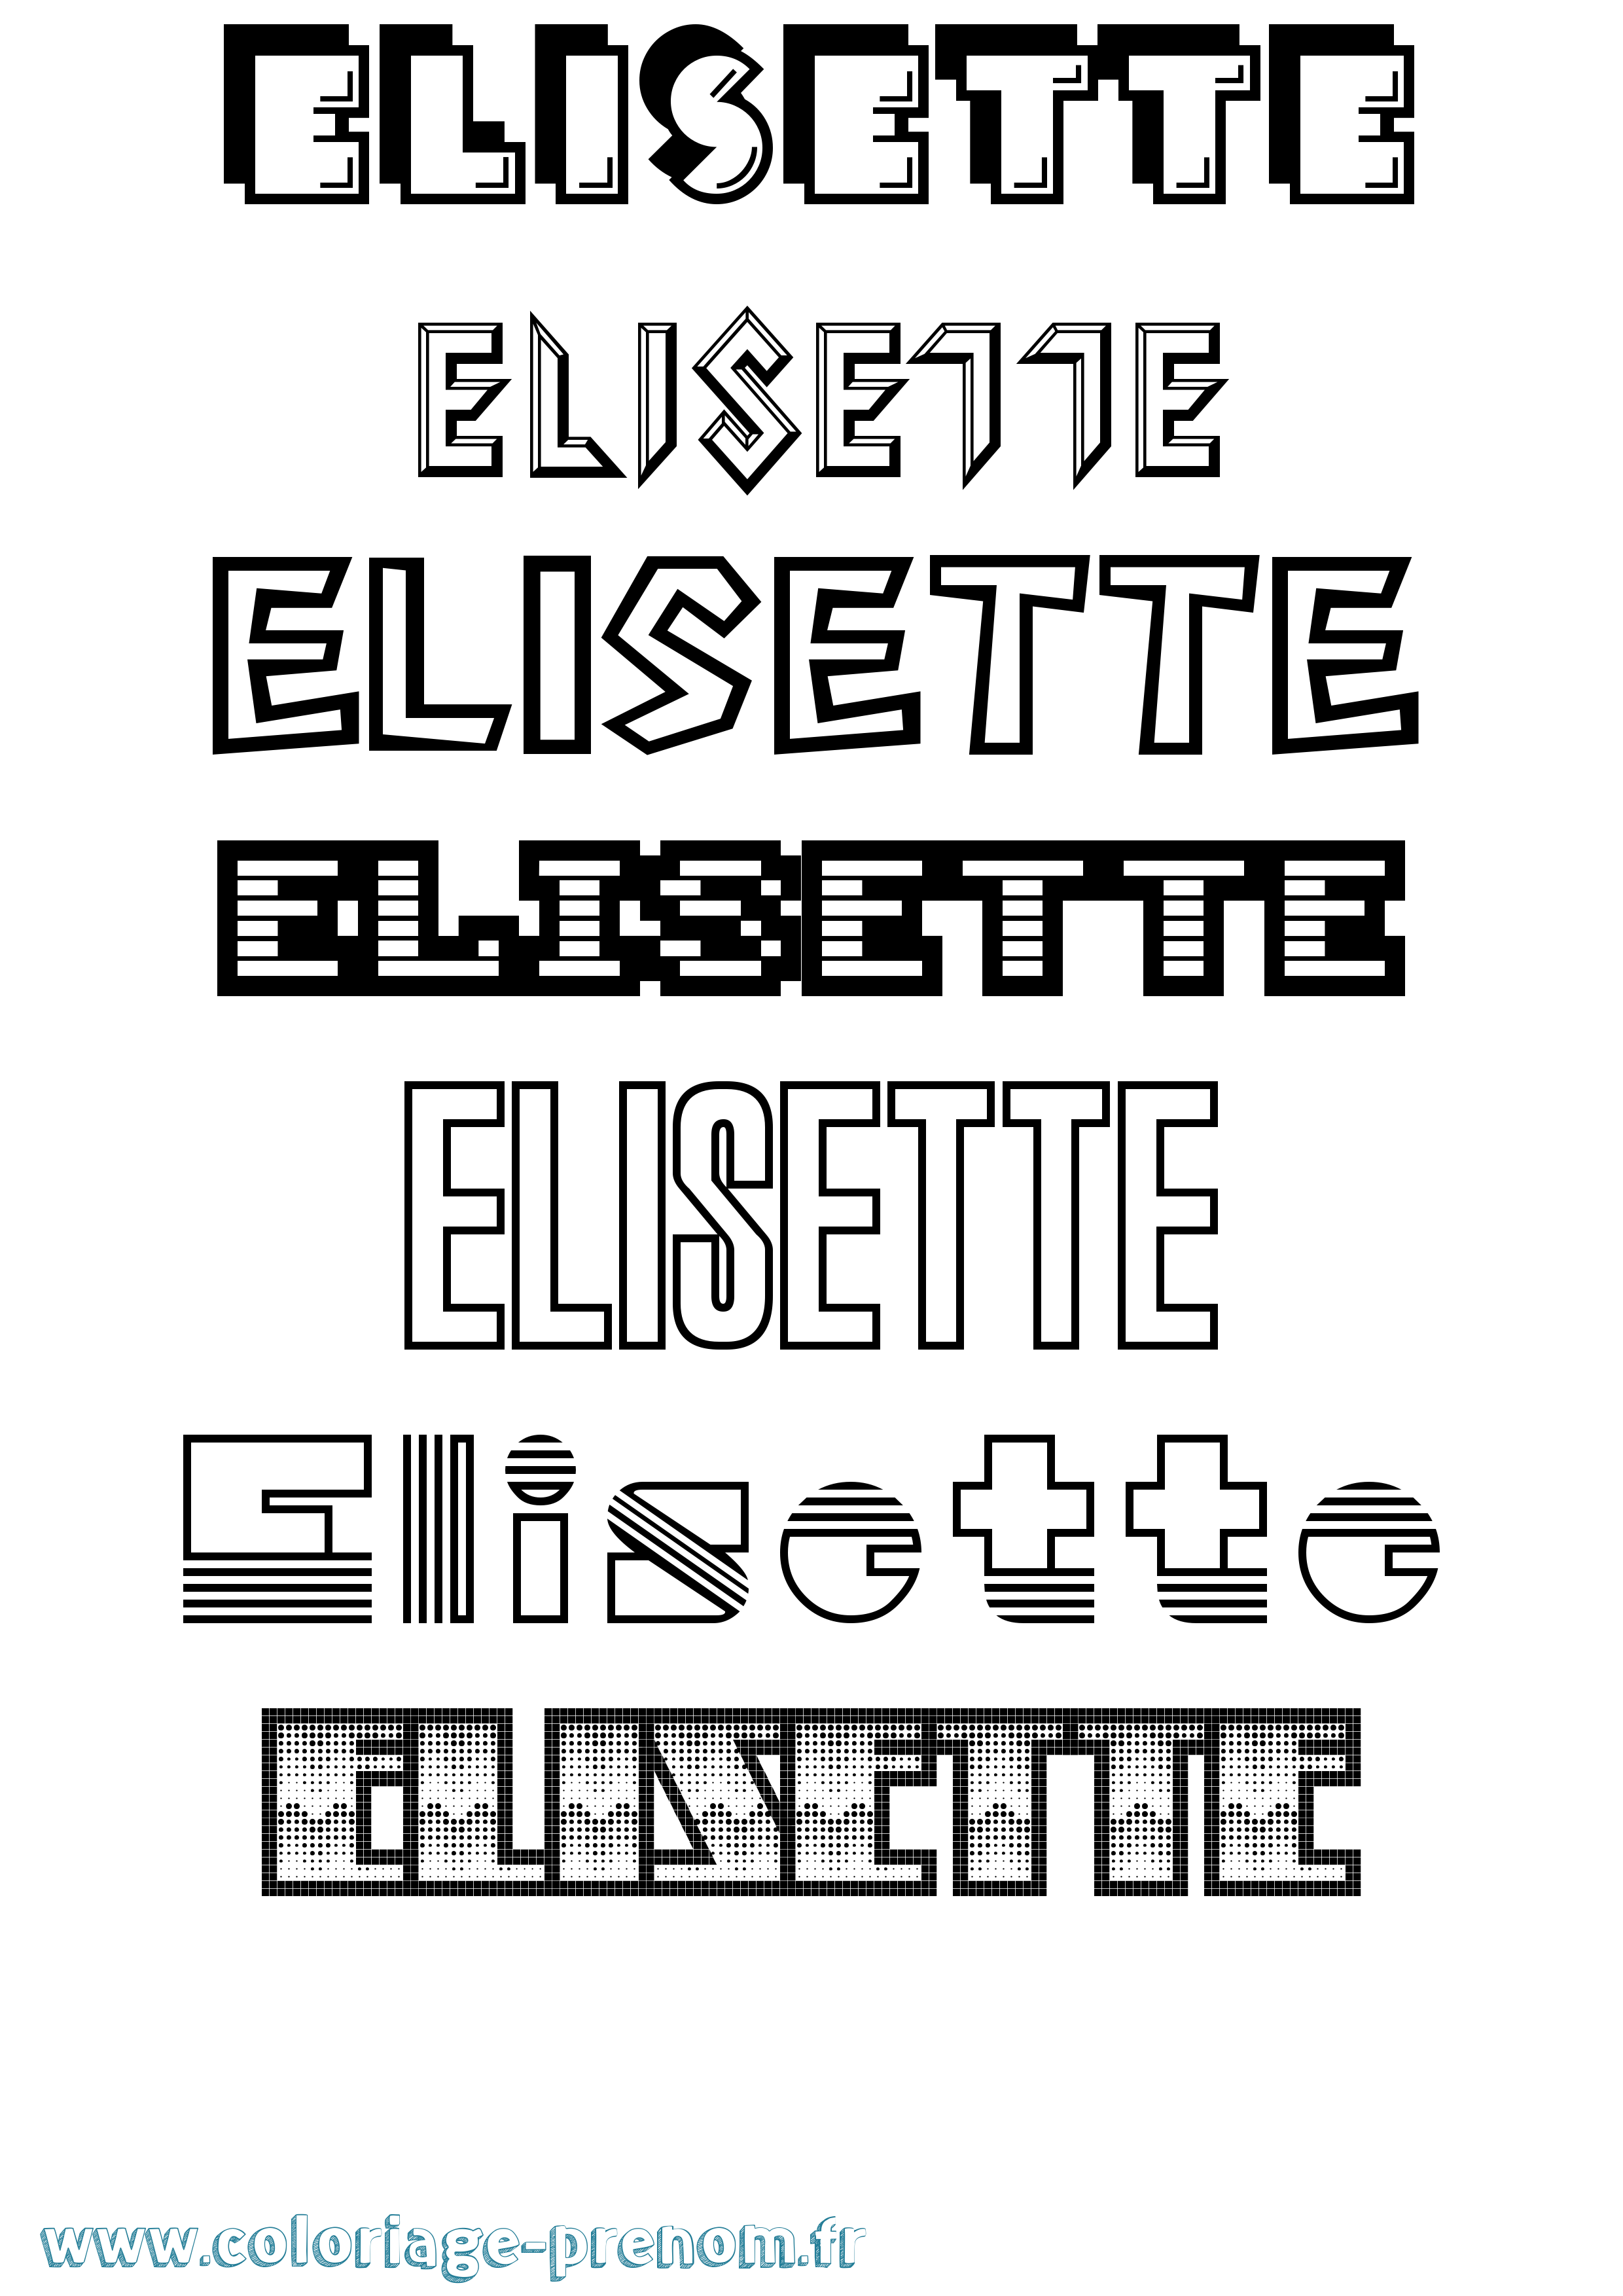 Coloriage prénom Elisette Jeux Vidéos